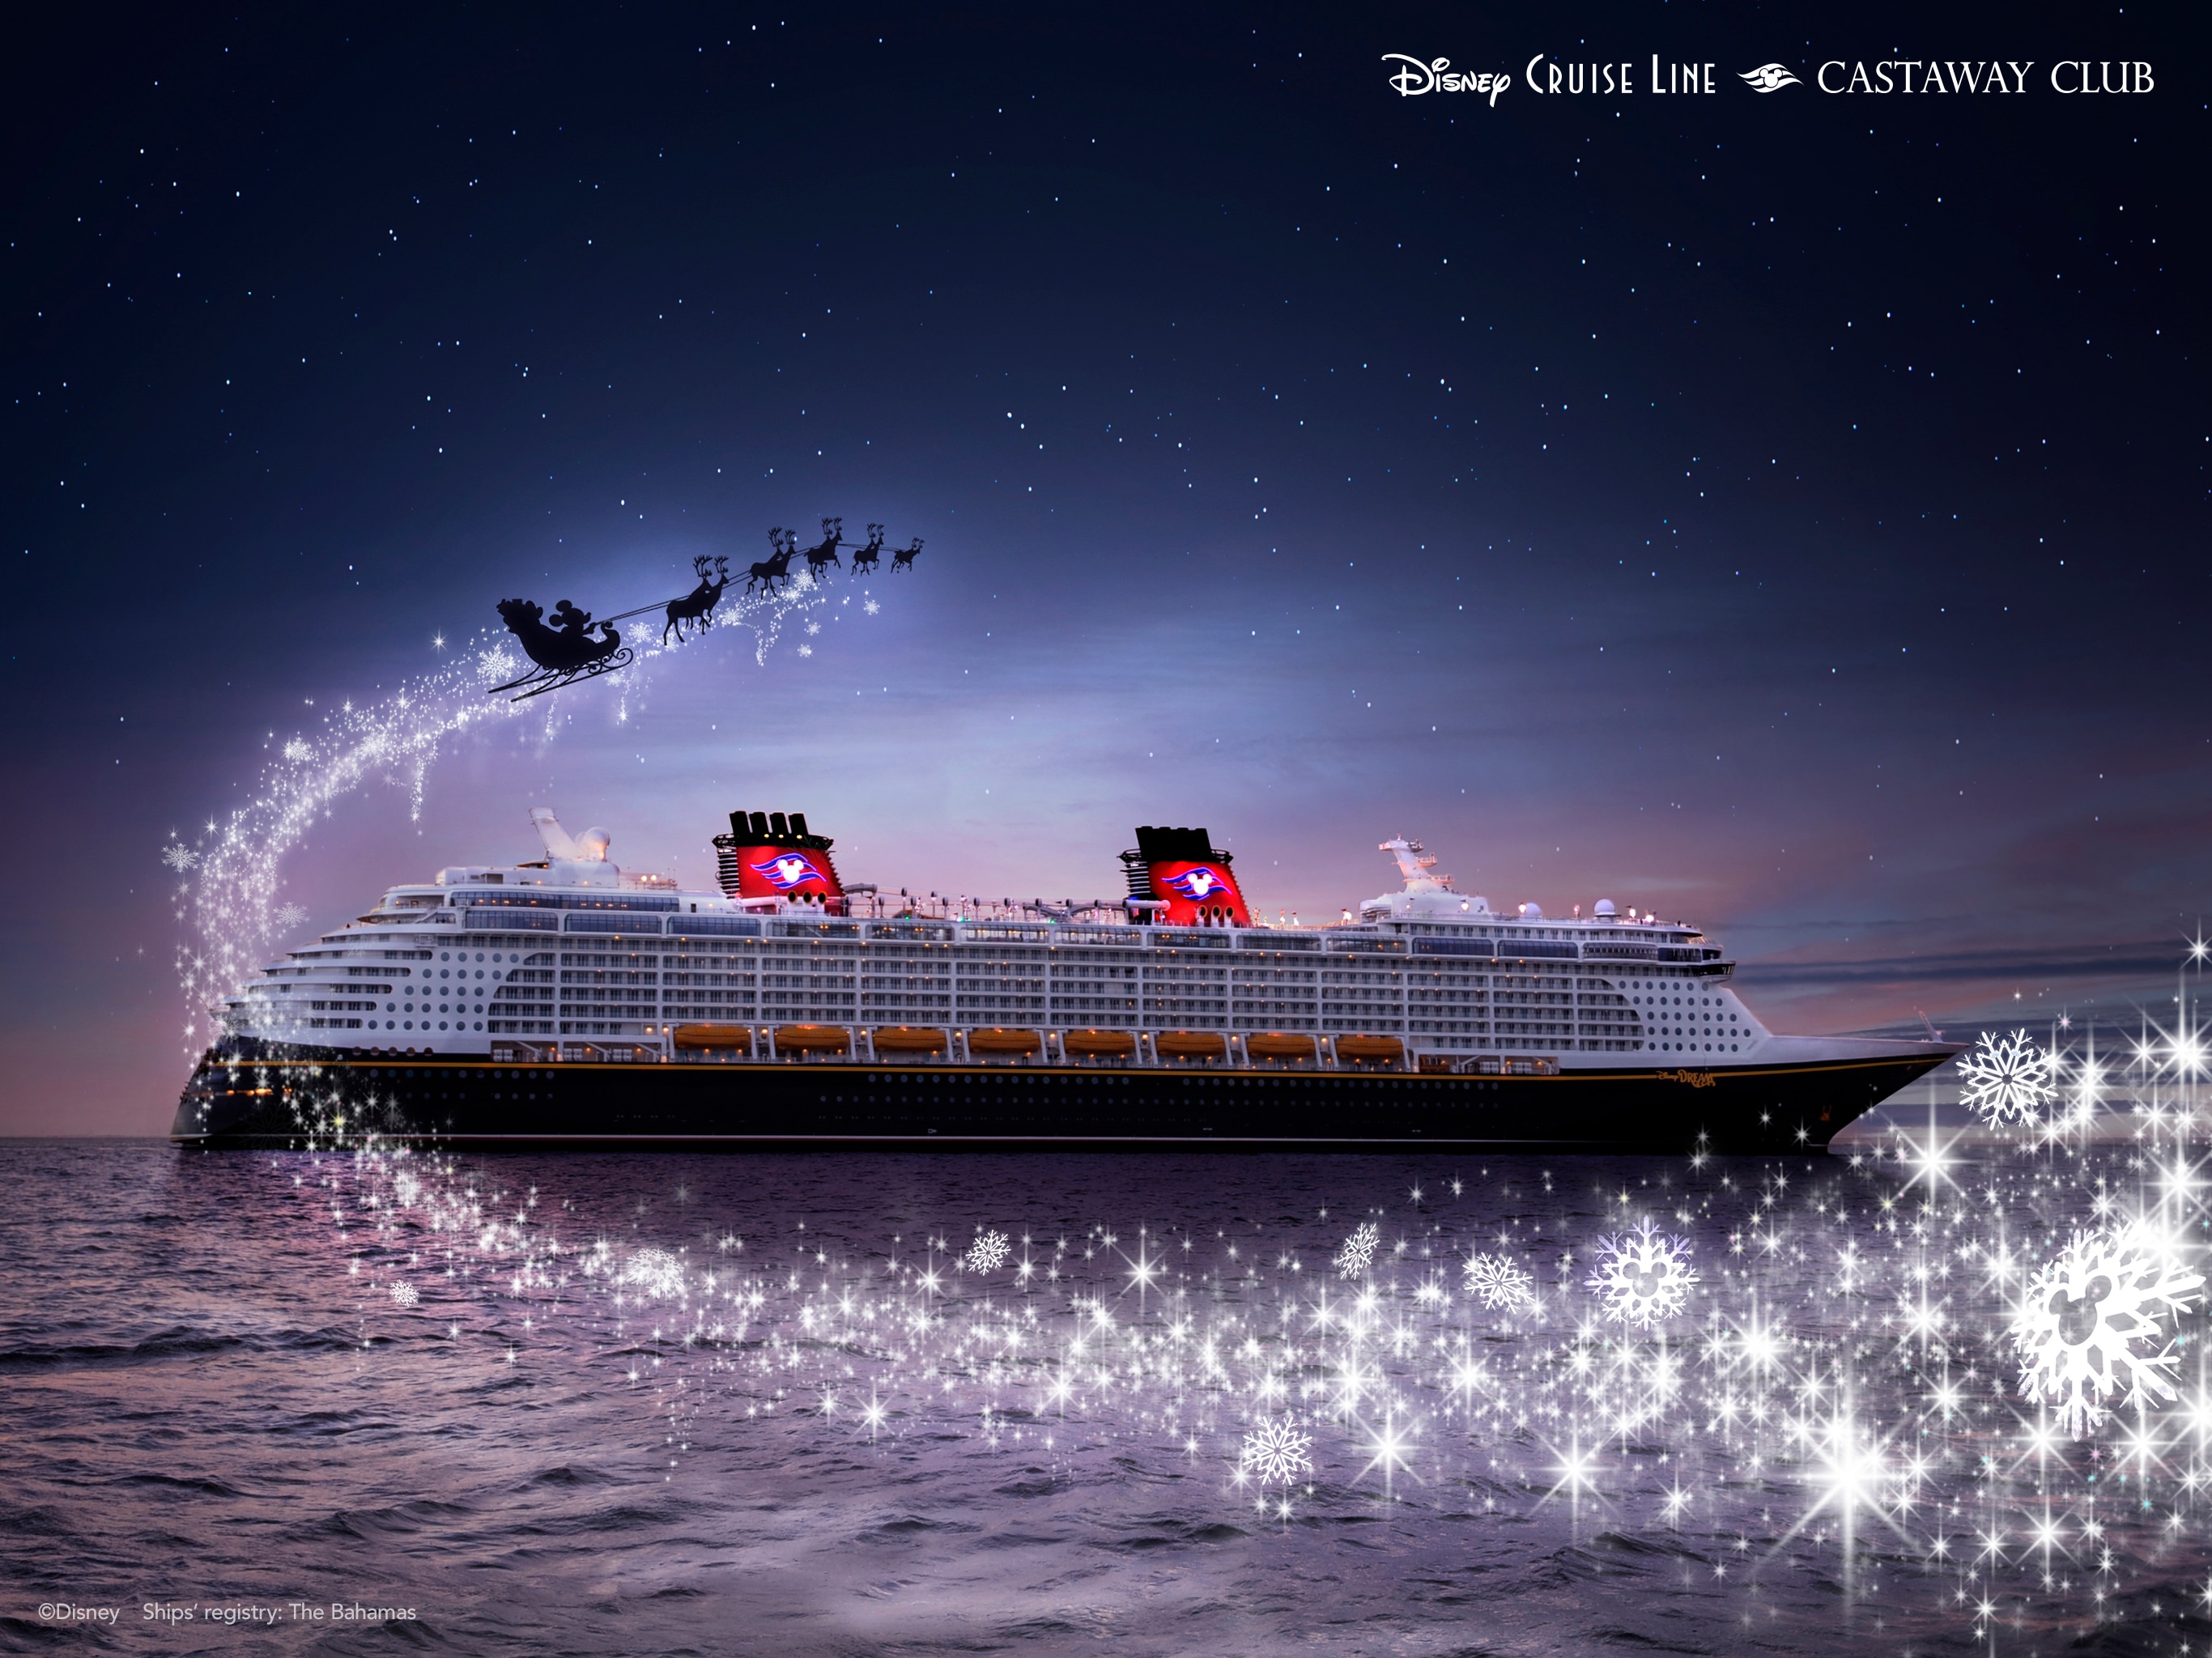 Disney Cruise Line Holiday Wallpaper: Hãy để tinh thần lễ hội trong các chuyến đi của bạn với hình nền Disney Cruise Line Holiday đẹp mắt! Hãy xem hình ảnh liên quan để tìm kiếm các lựa chọn vẻ đẹp tuyệt vời nhất và sử dụng chúng để tạo ra không gian đầy màu sắc và rực rỡ trong phòng của bạn!